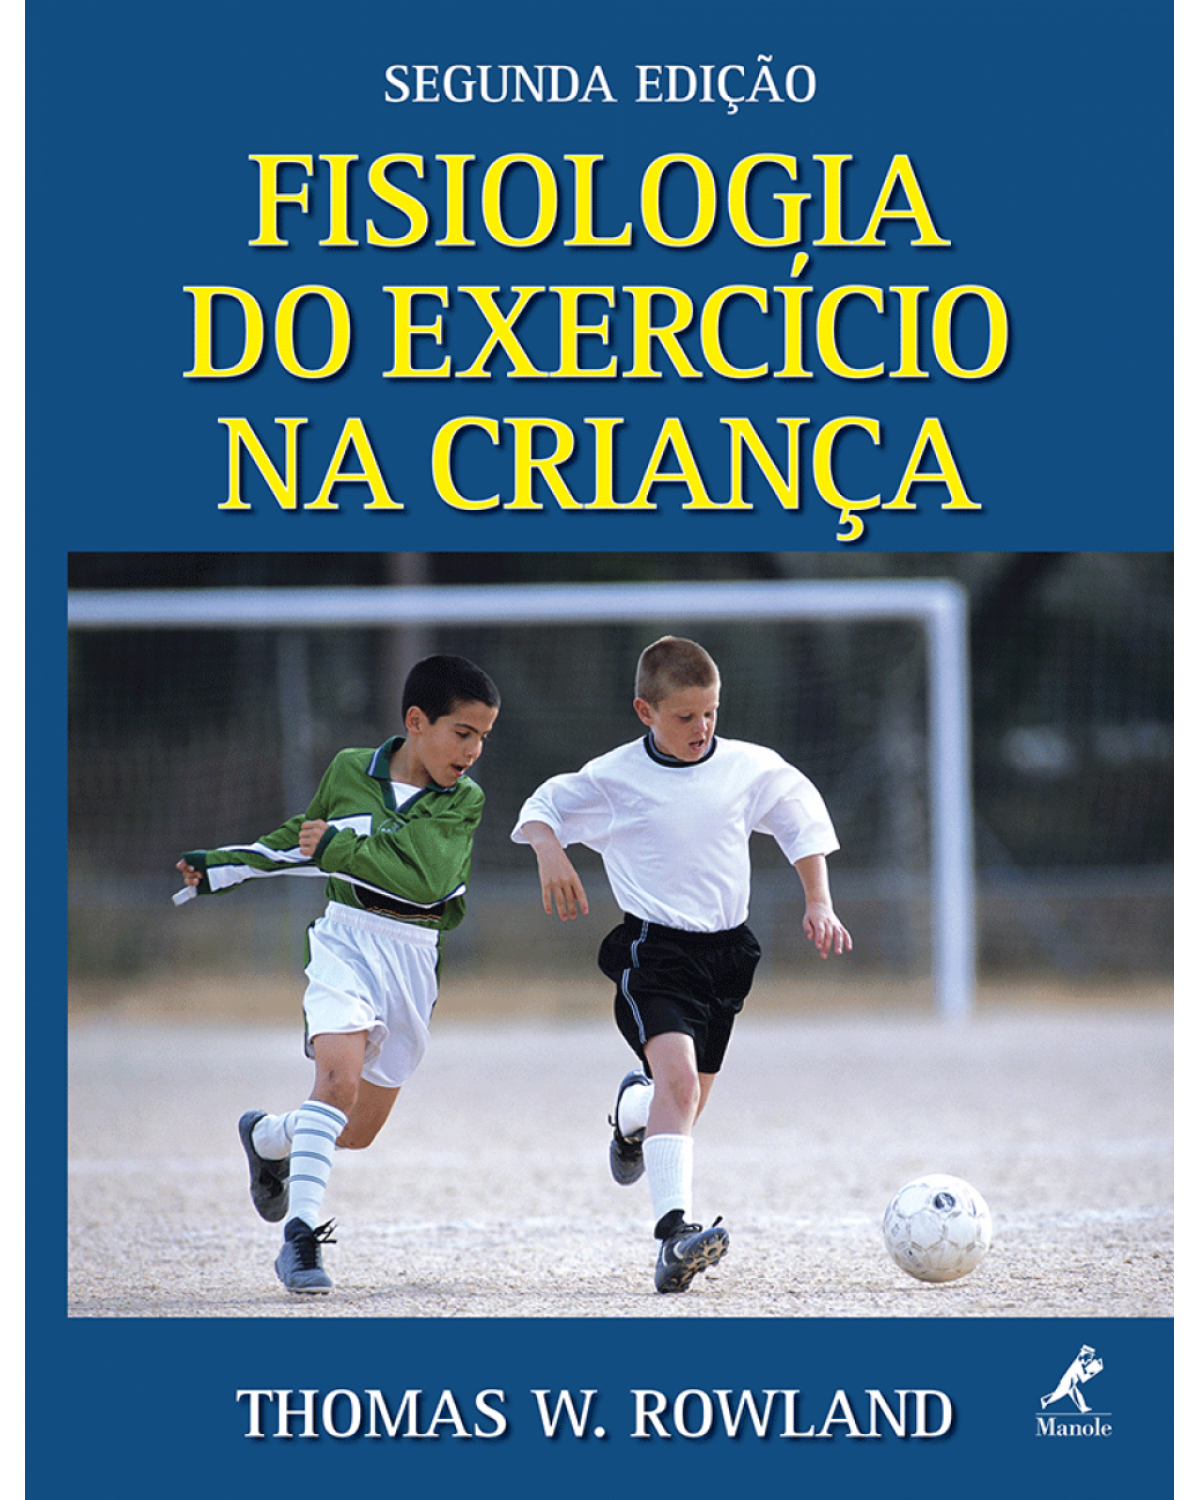 Fisiologia do exercício na criança - 2ª Edição | 2008